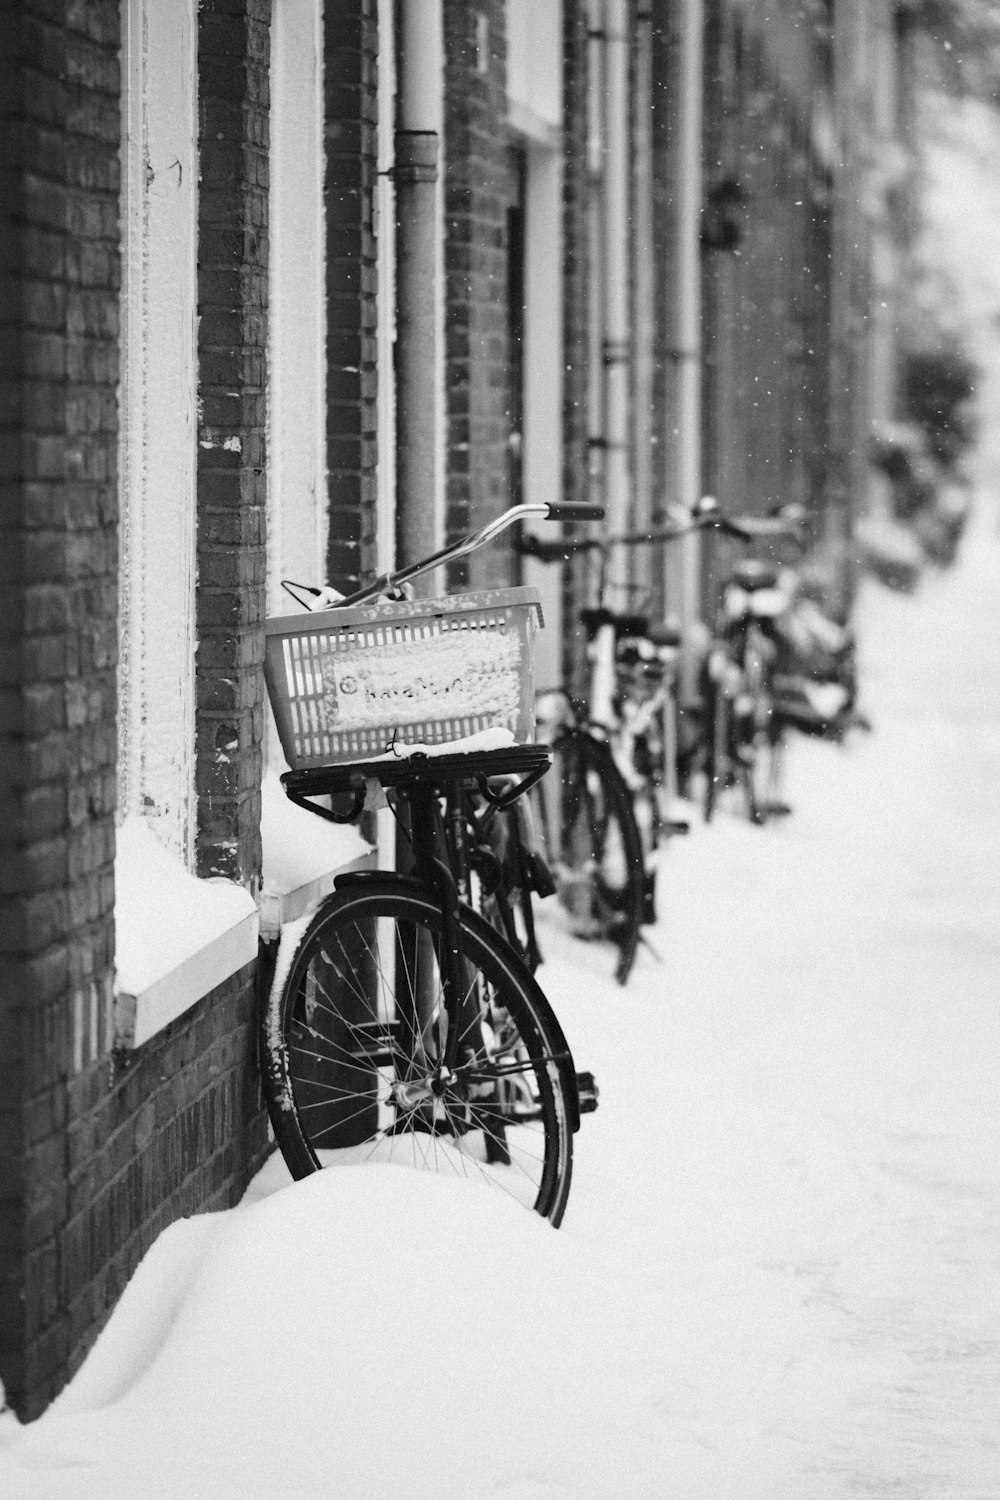 Fahrrad neben Ziegelmauer in Graustufenfotografie geparkt